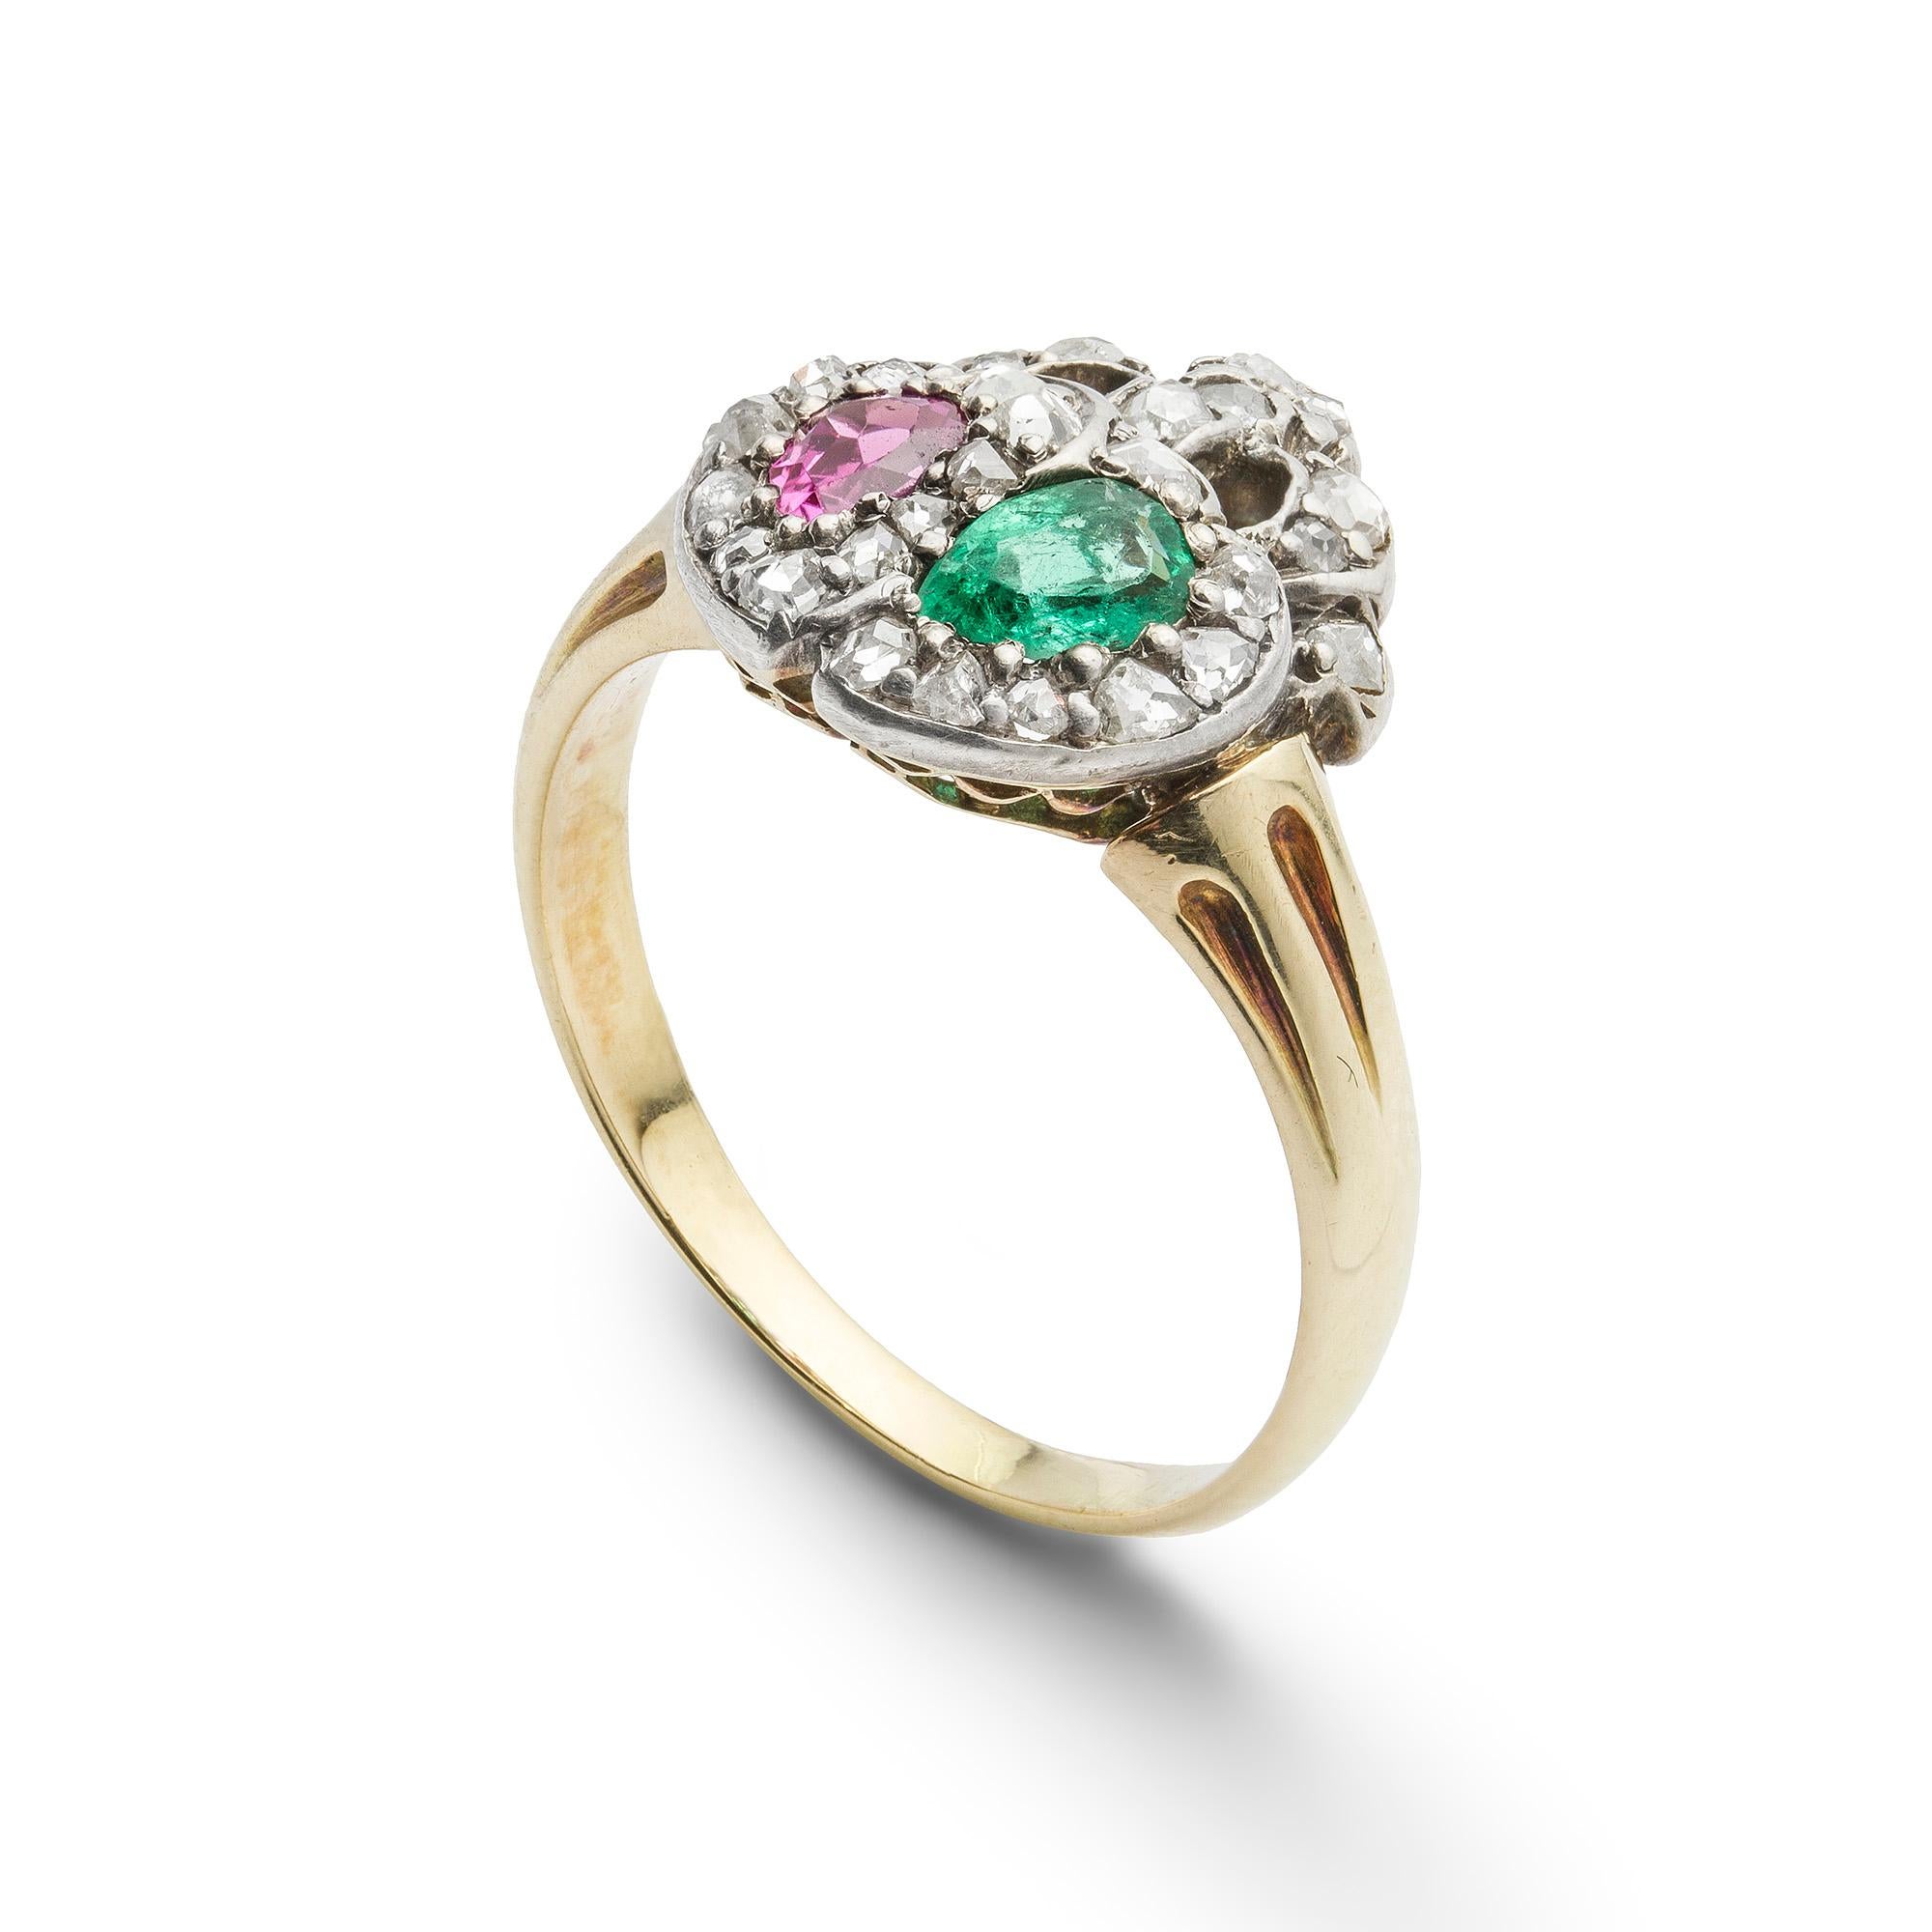 Ein spätviktorianischer Smaragd-, Rubin- und Diamant-Zwillingsherzring. Der Ring ist mit zwei ineinandergreifenden Herzen besetzt, das eine mit einem birnenförmigen Smaragd mit einem geschätzten Gewicht von 0,15 Karat, das andere mit einem